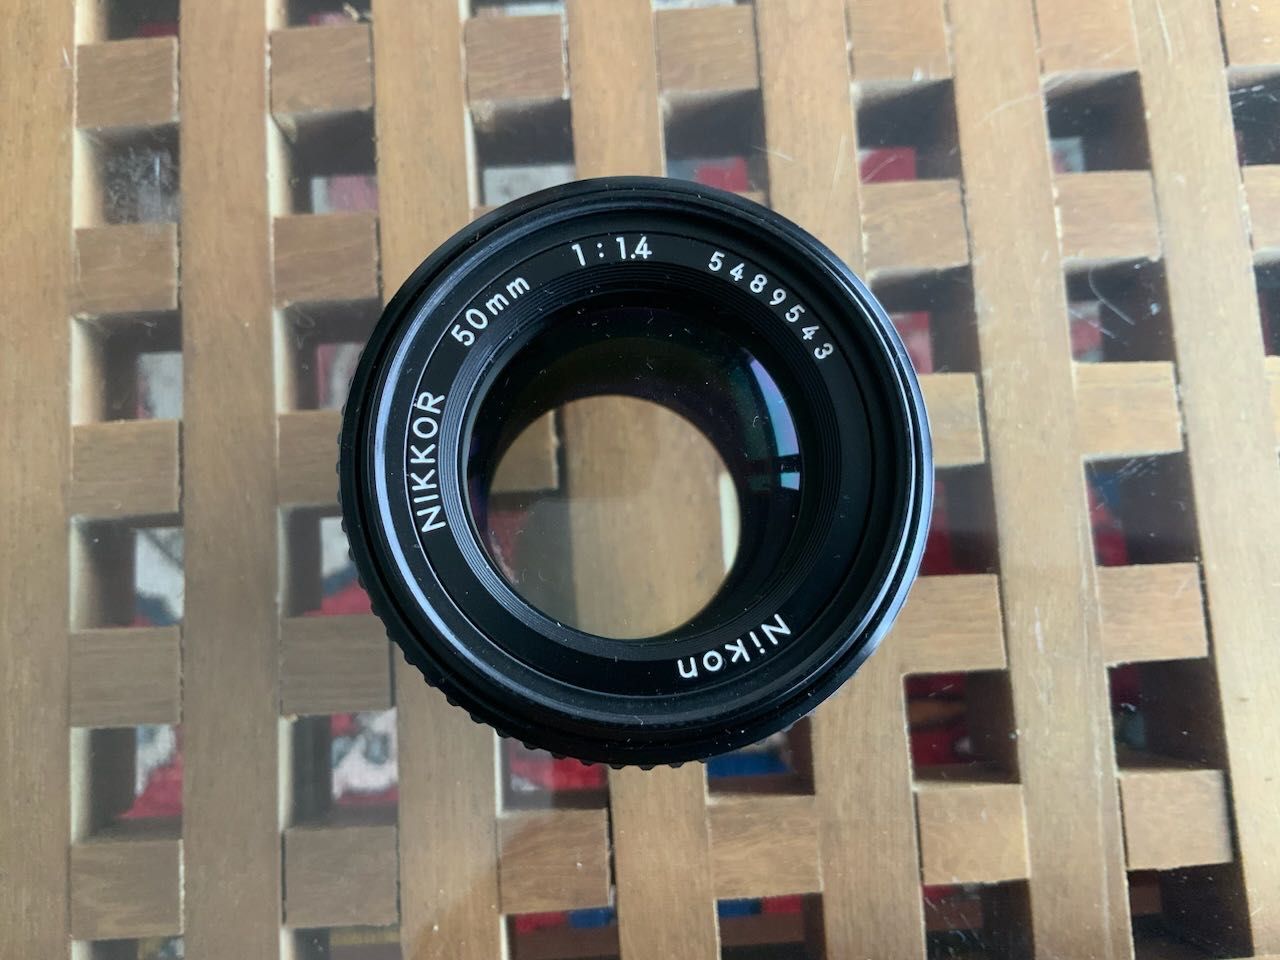 Nikon 50mm f:1.4 Ais lente como nova.